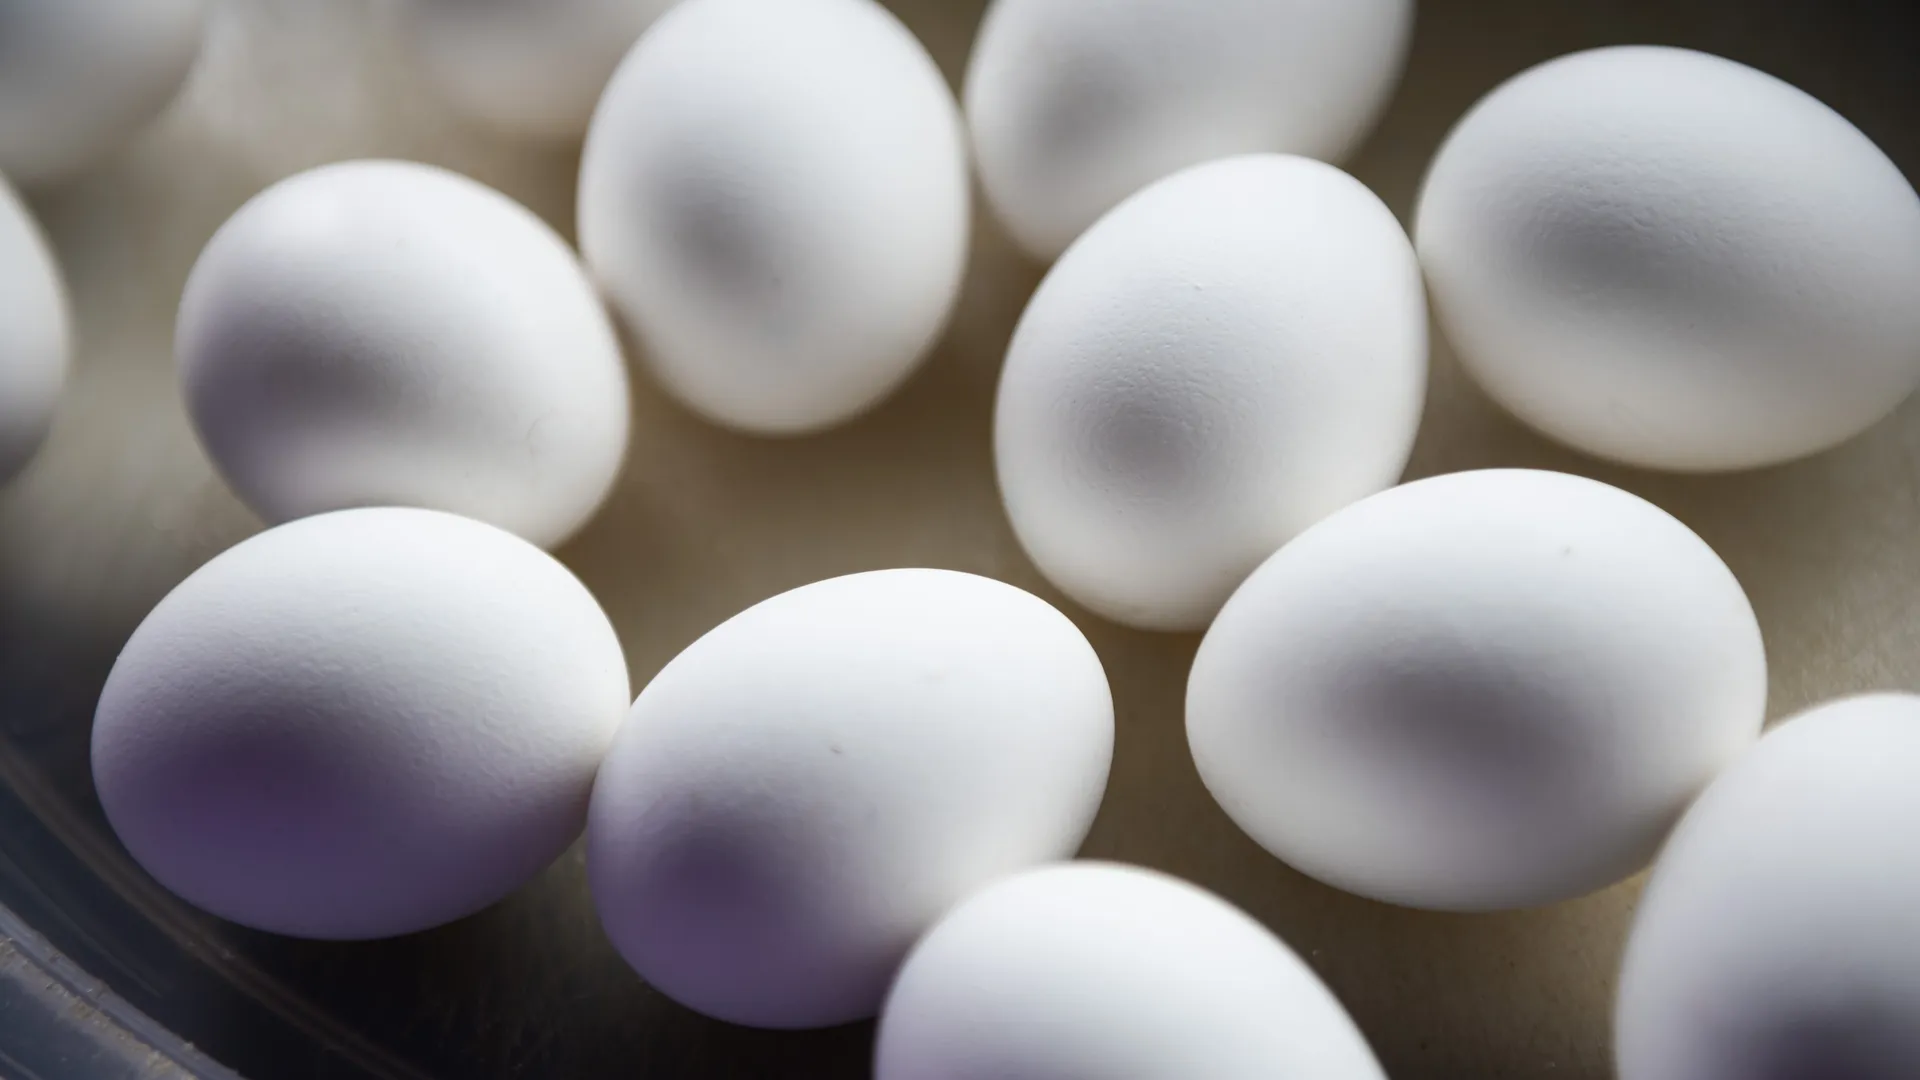 ФАС заявила о тенденции к снижению цен на яйца в России